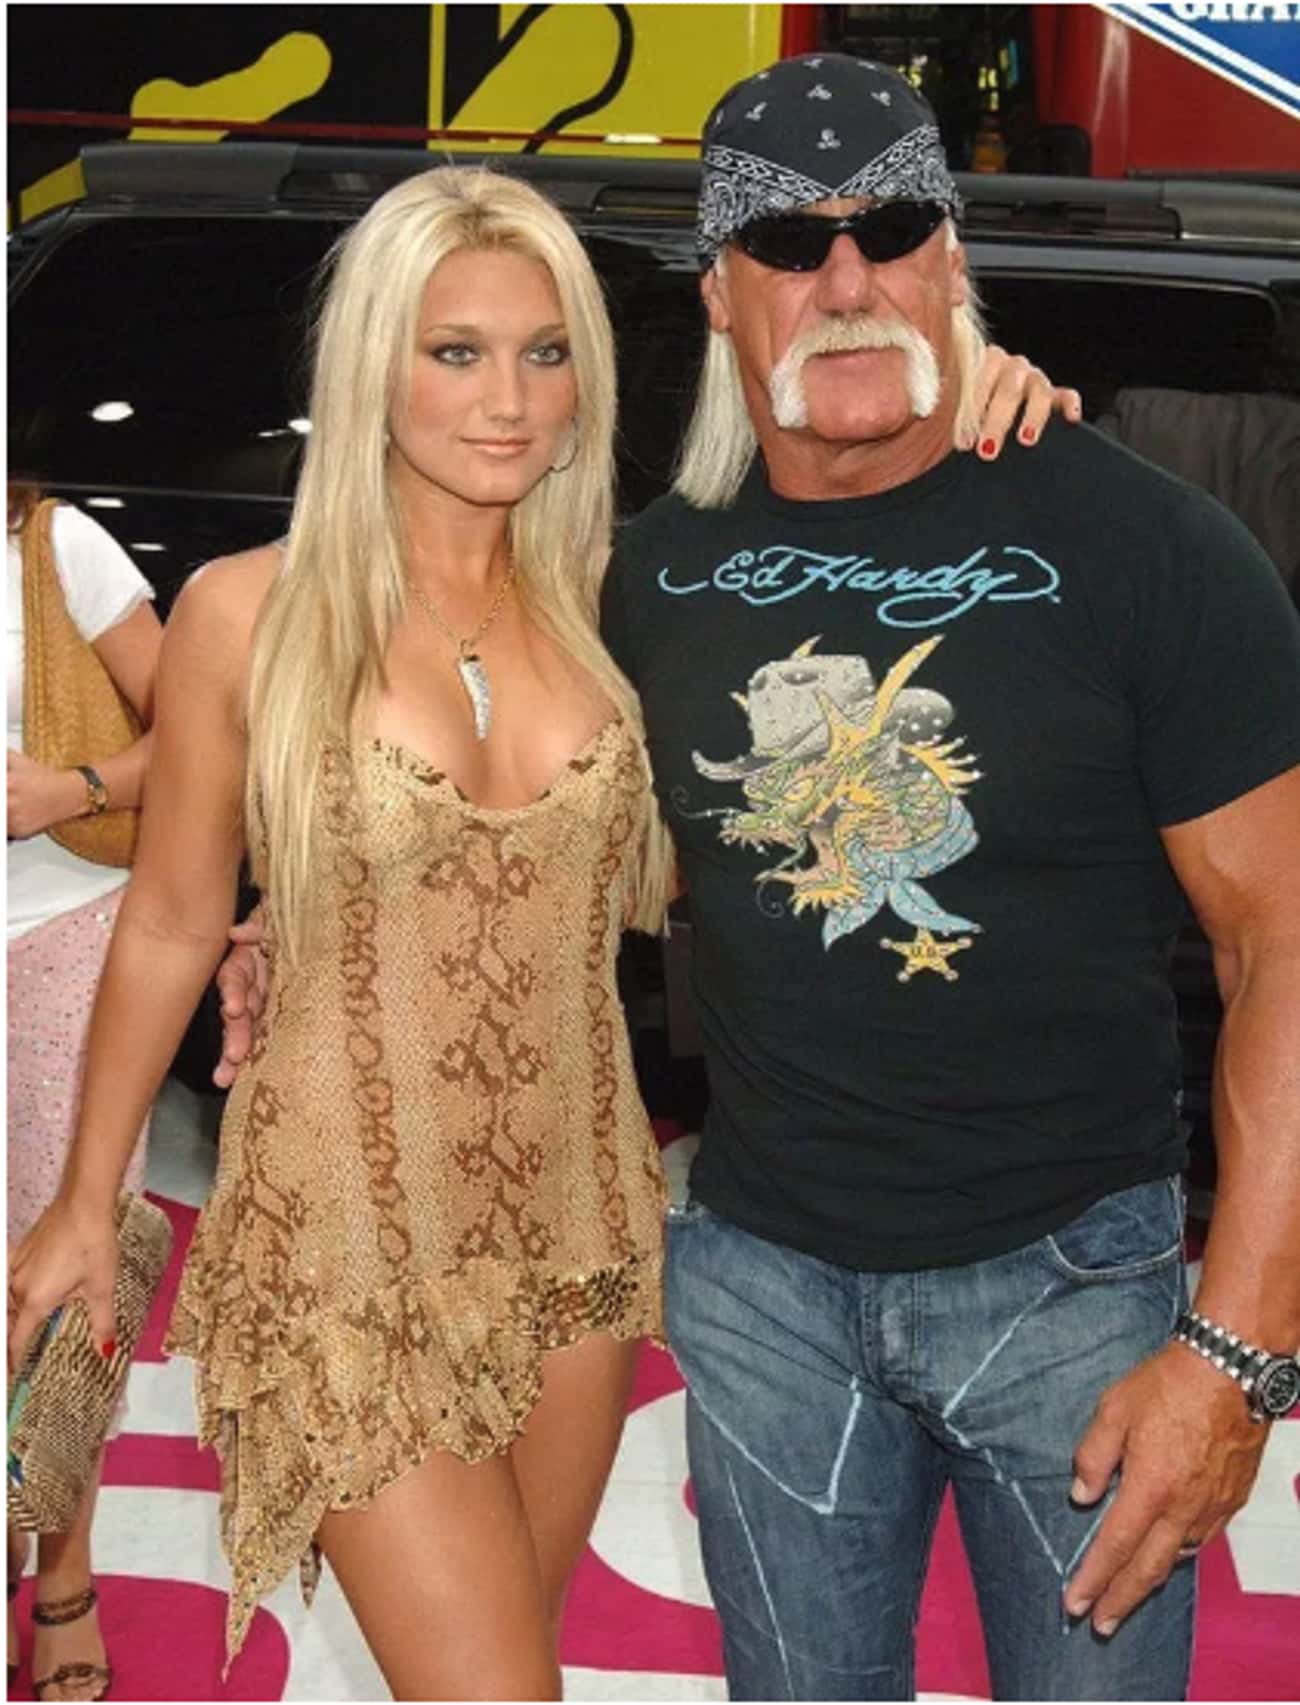 Hulk Hogan And Brooke Hogan At The MTV Video Music Awards, 2006